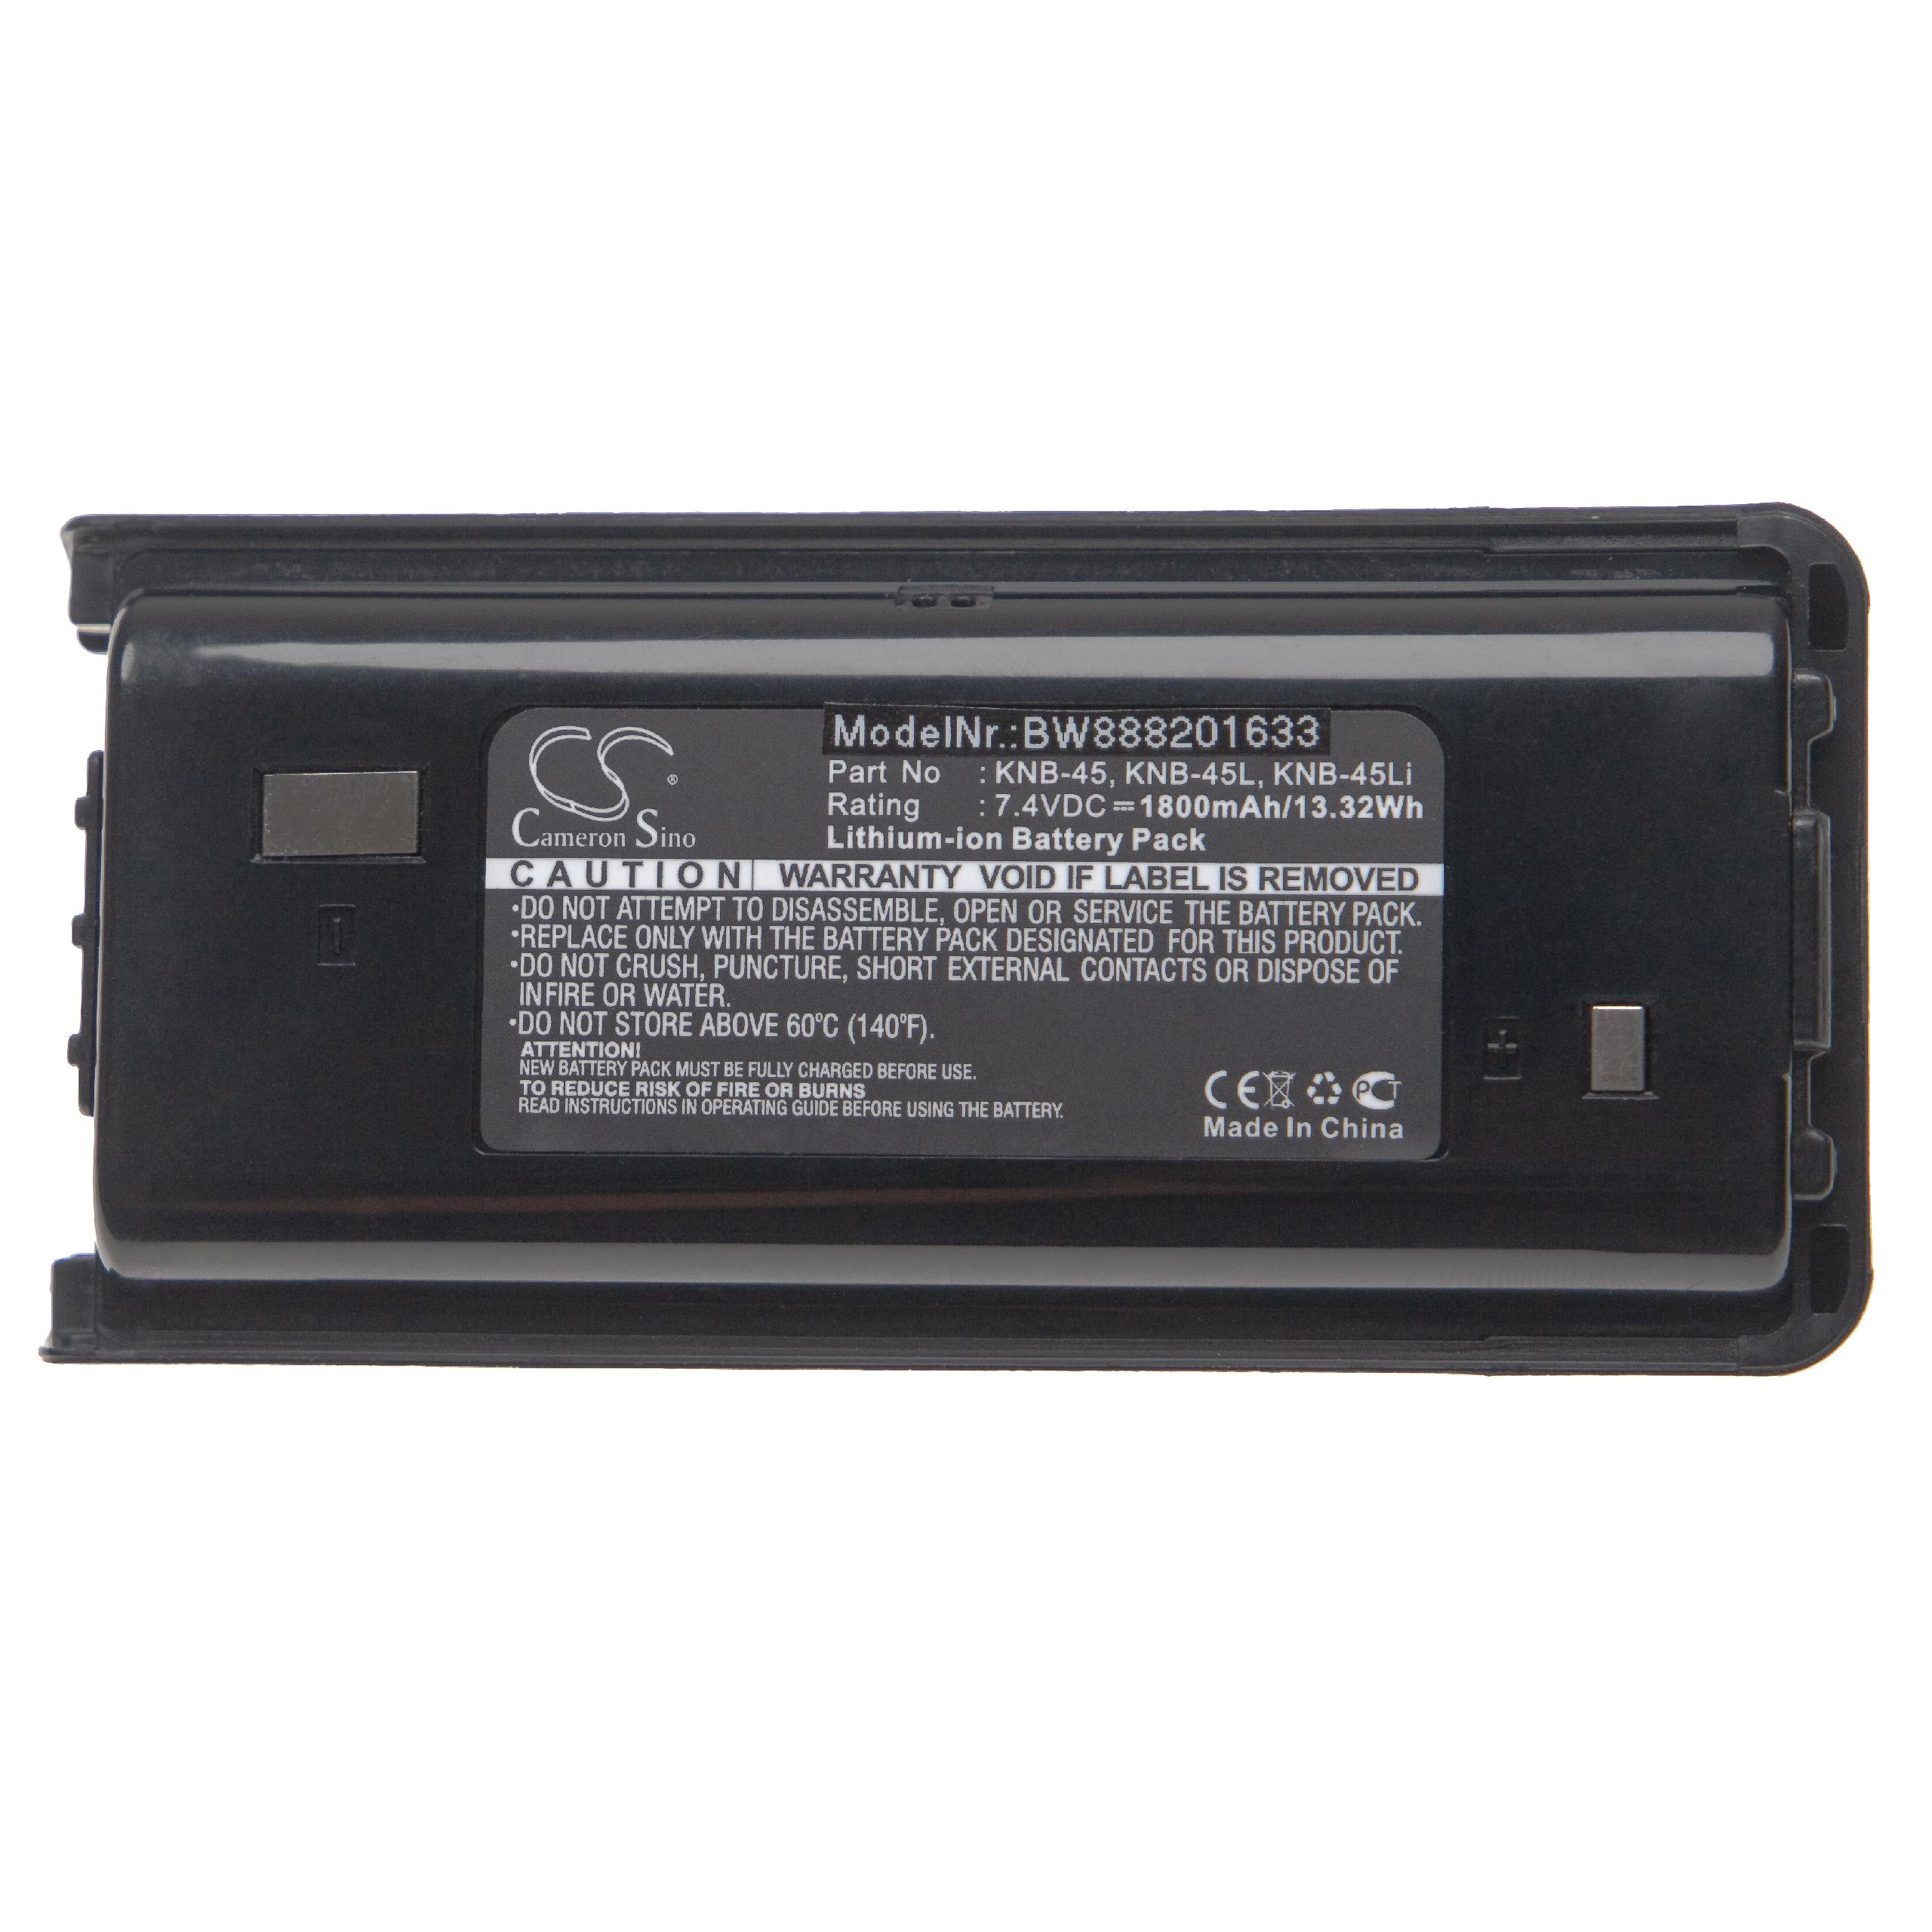 Radio Battery Replacement for Kenwood KNB-45L, KNB-45Li, KNB-45 - 1800mAh 7.4V Li-Ion